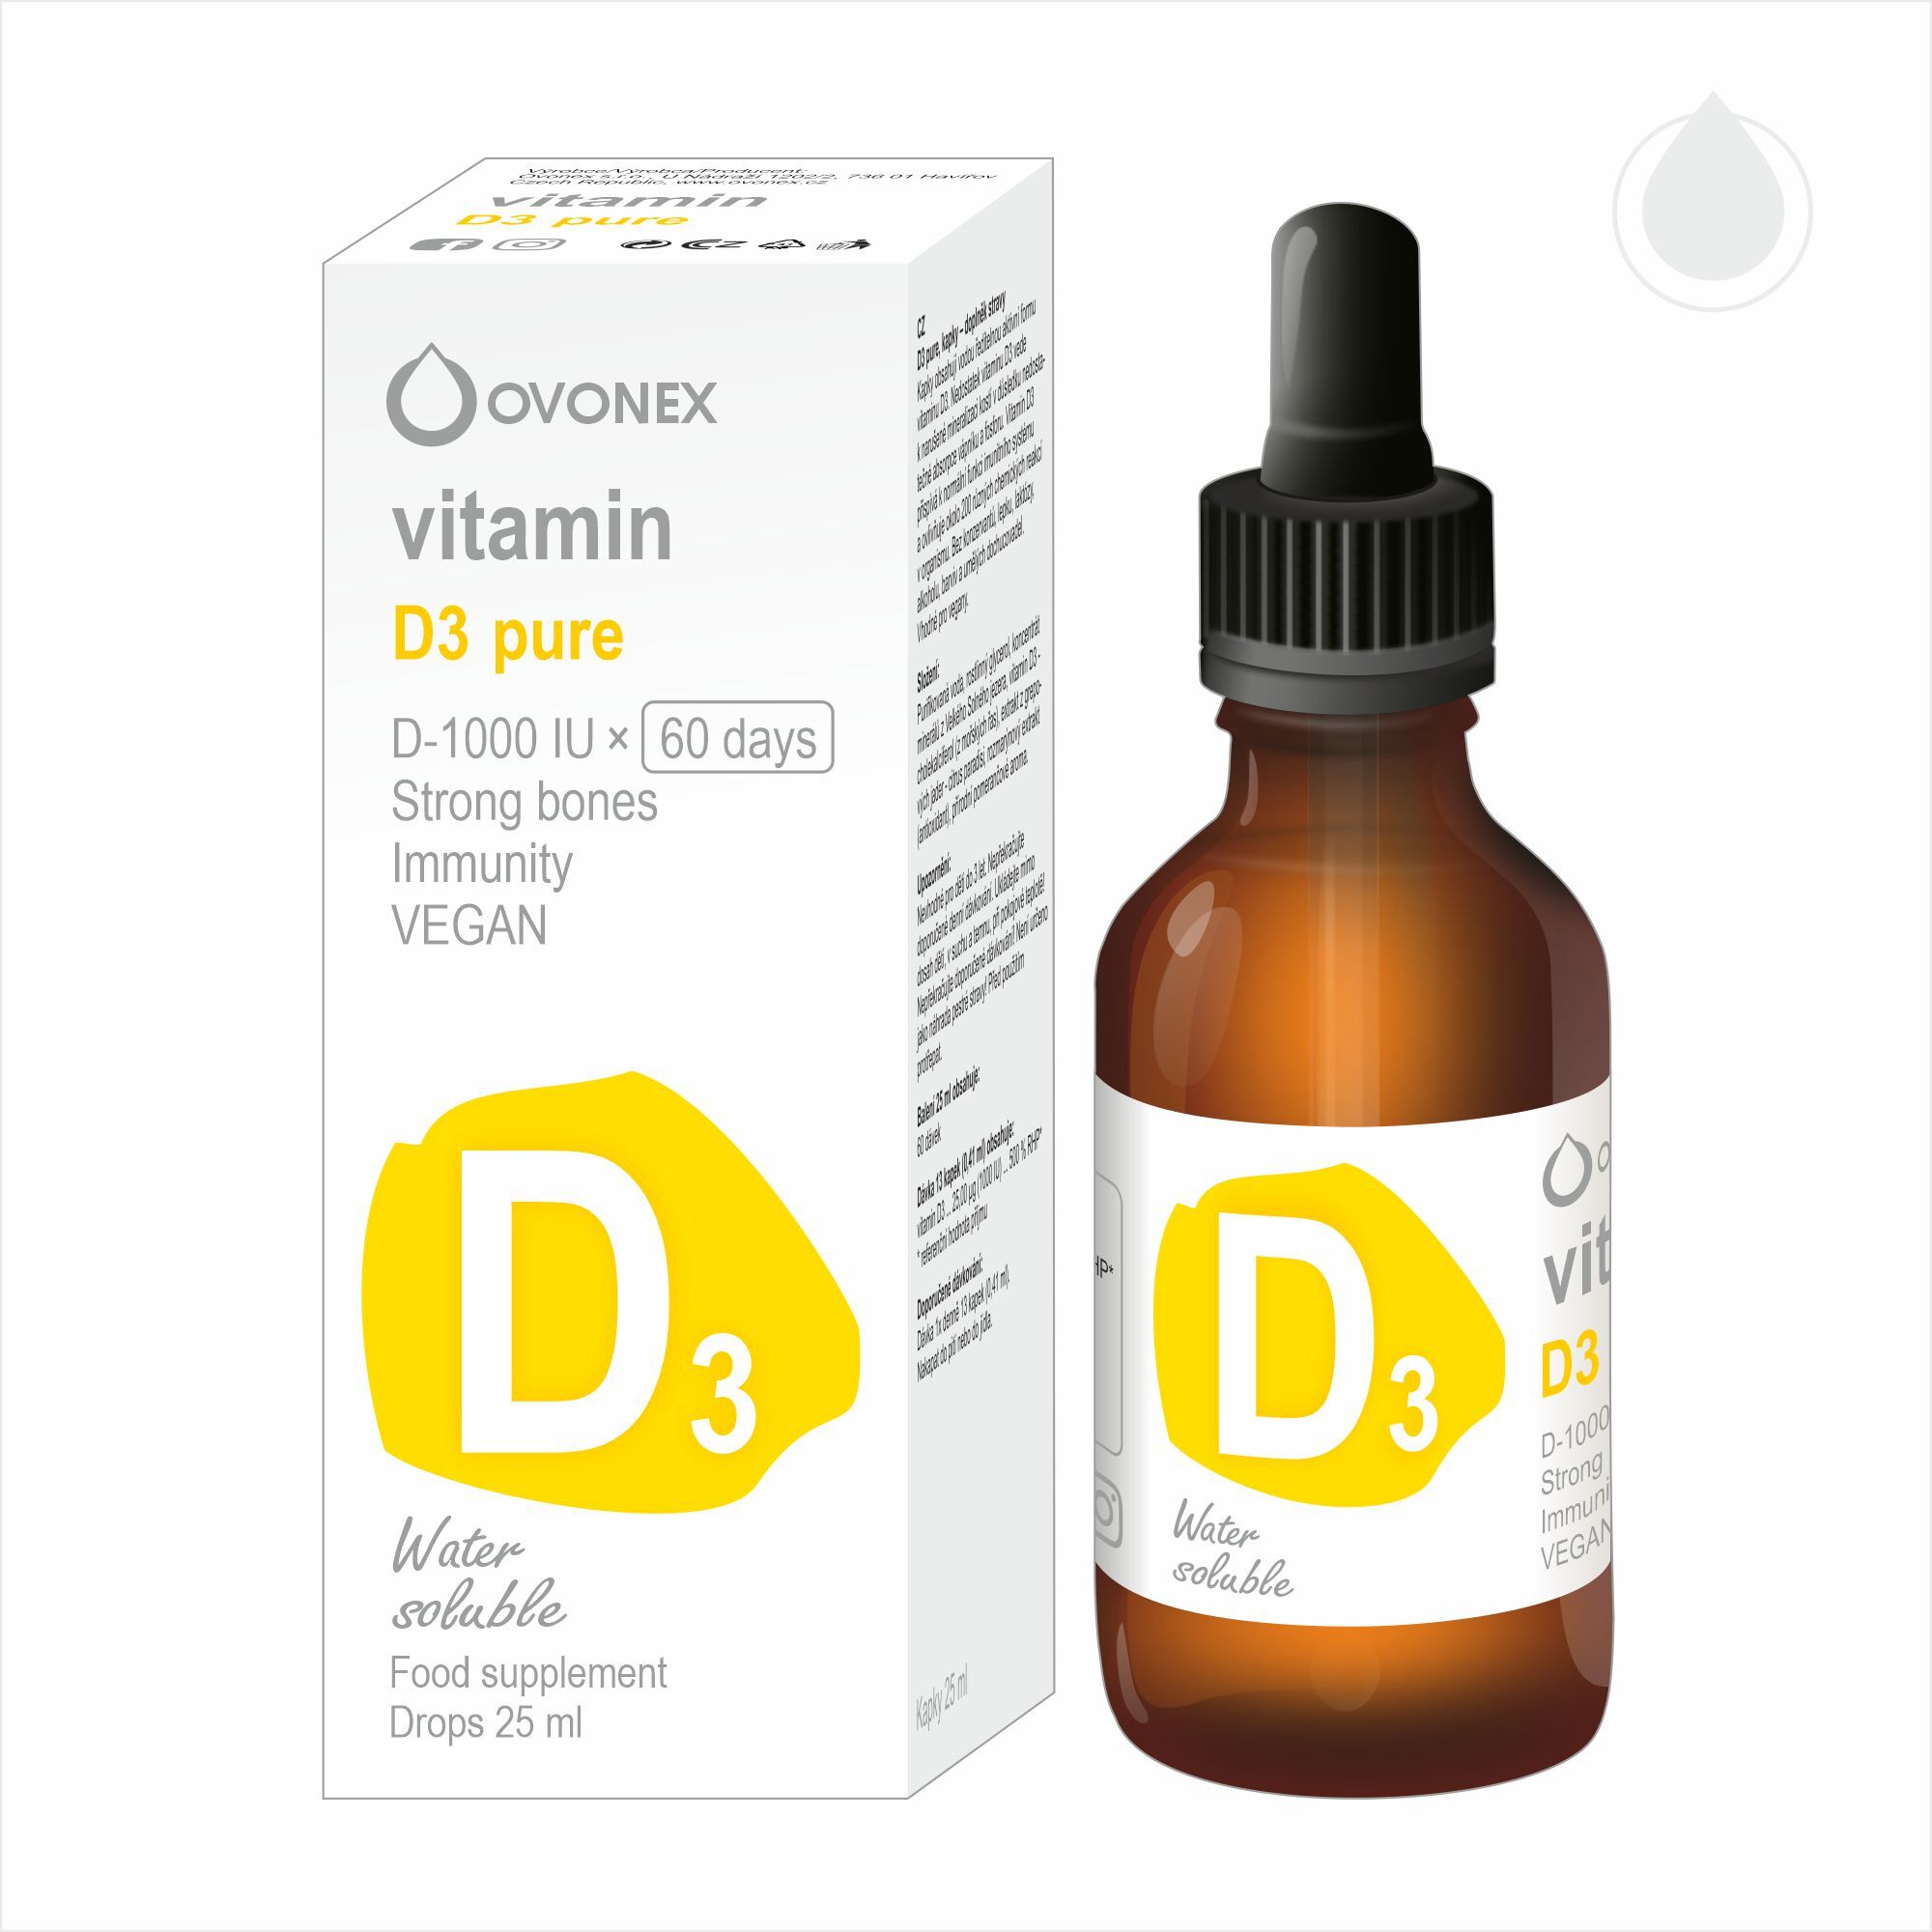 OVONEX Vitamin D3 pure 25 ml